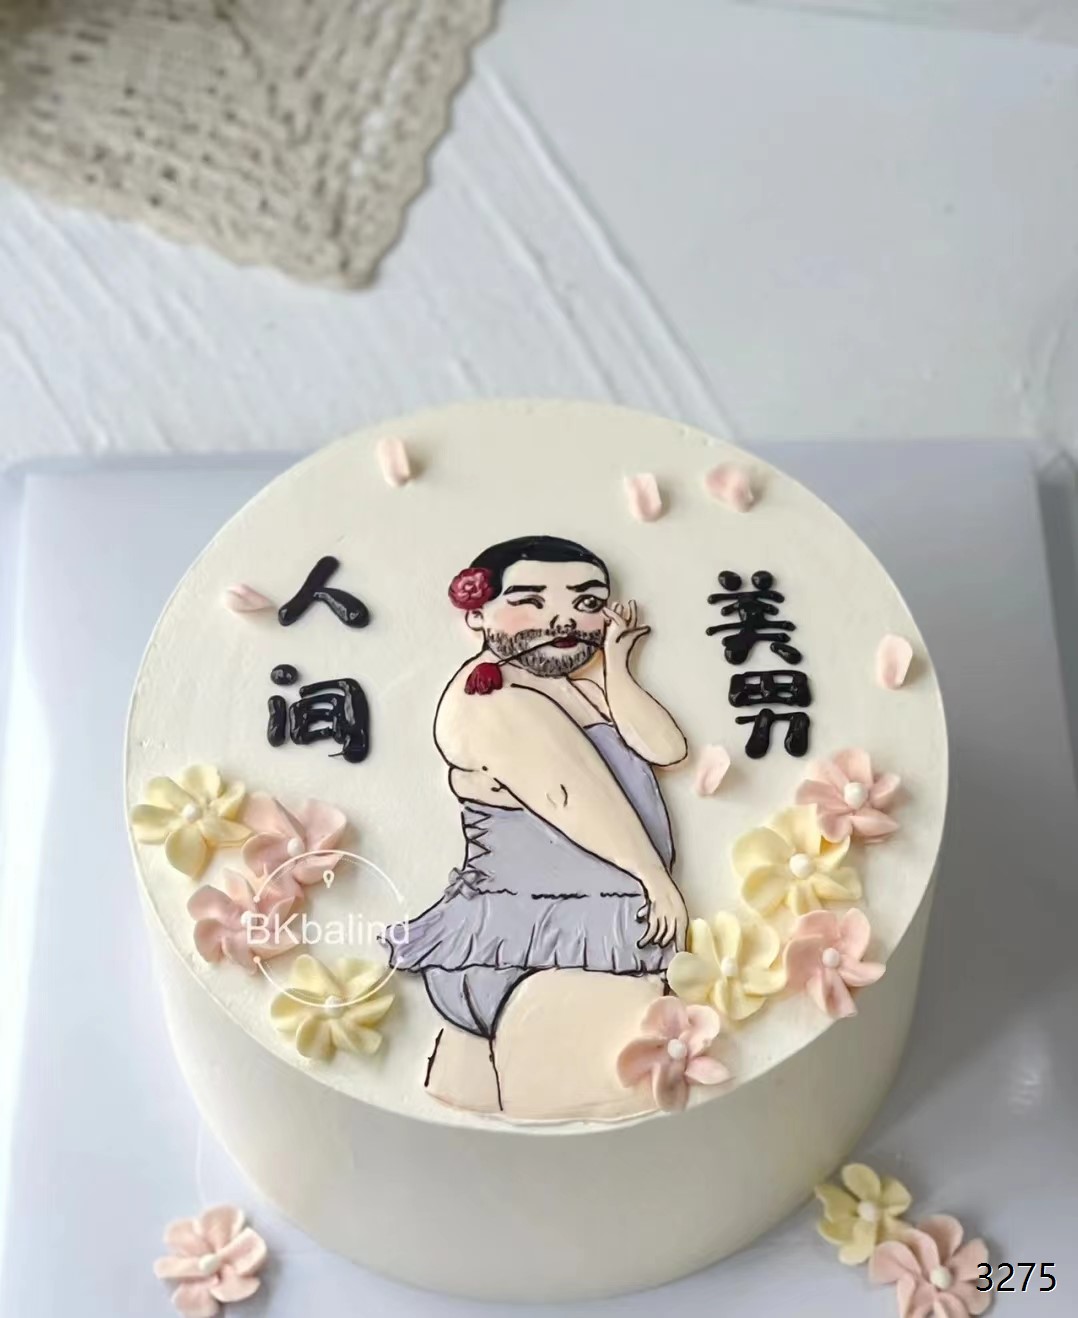 虹.cake/恶搞蛋糕